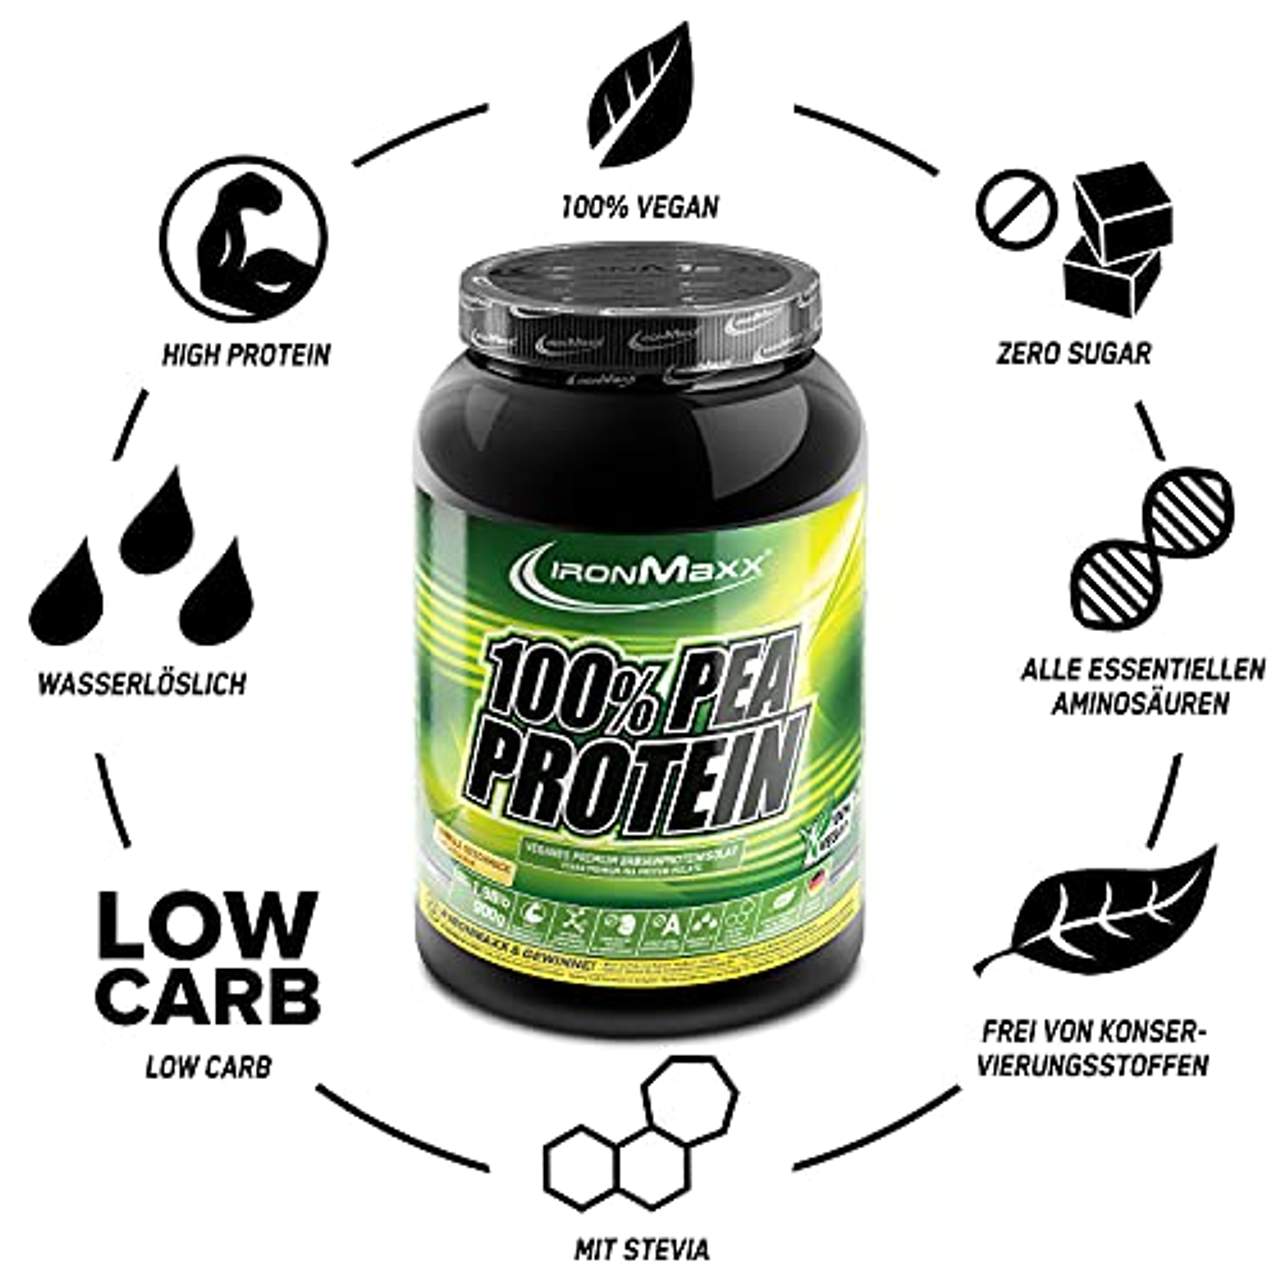 IronMaxx 100 % Pea Protein